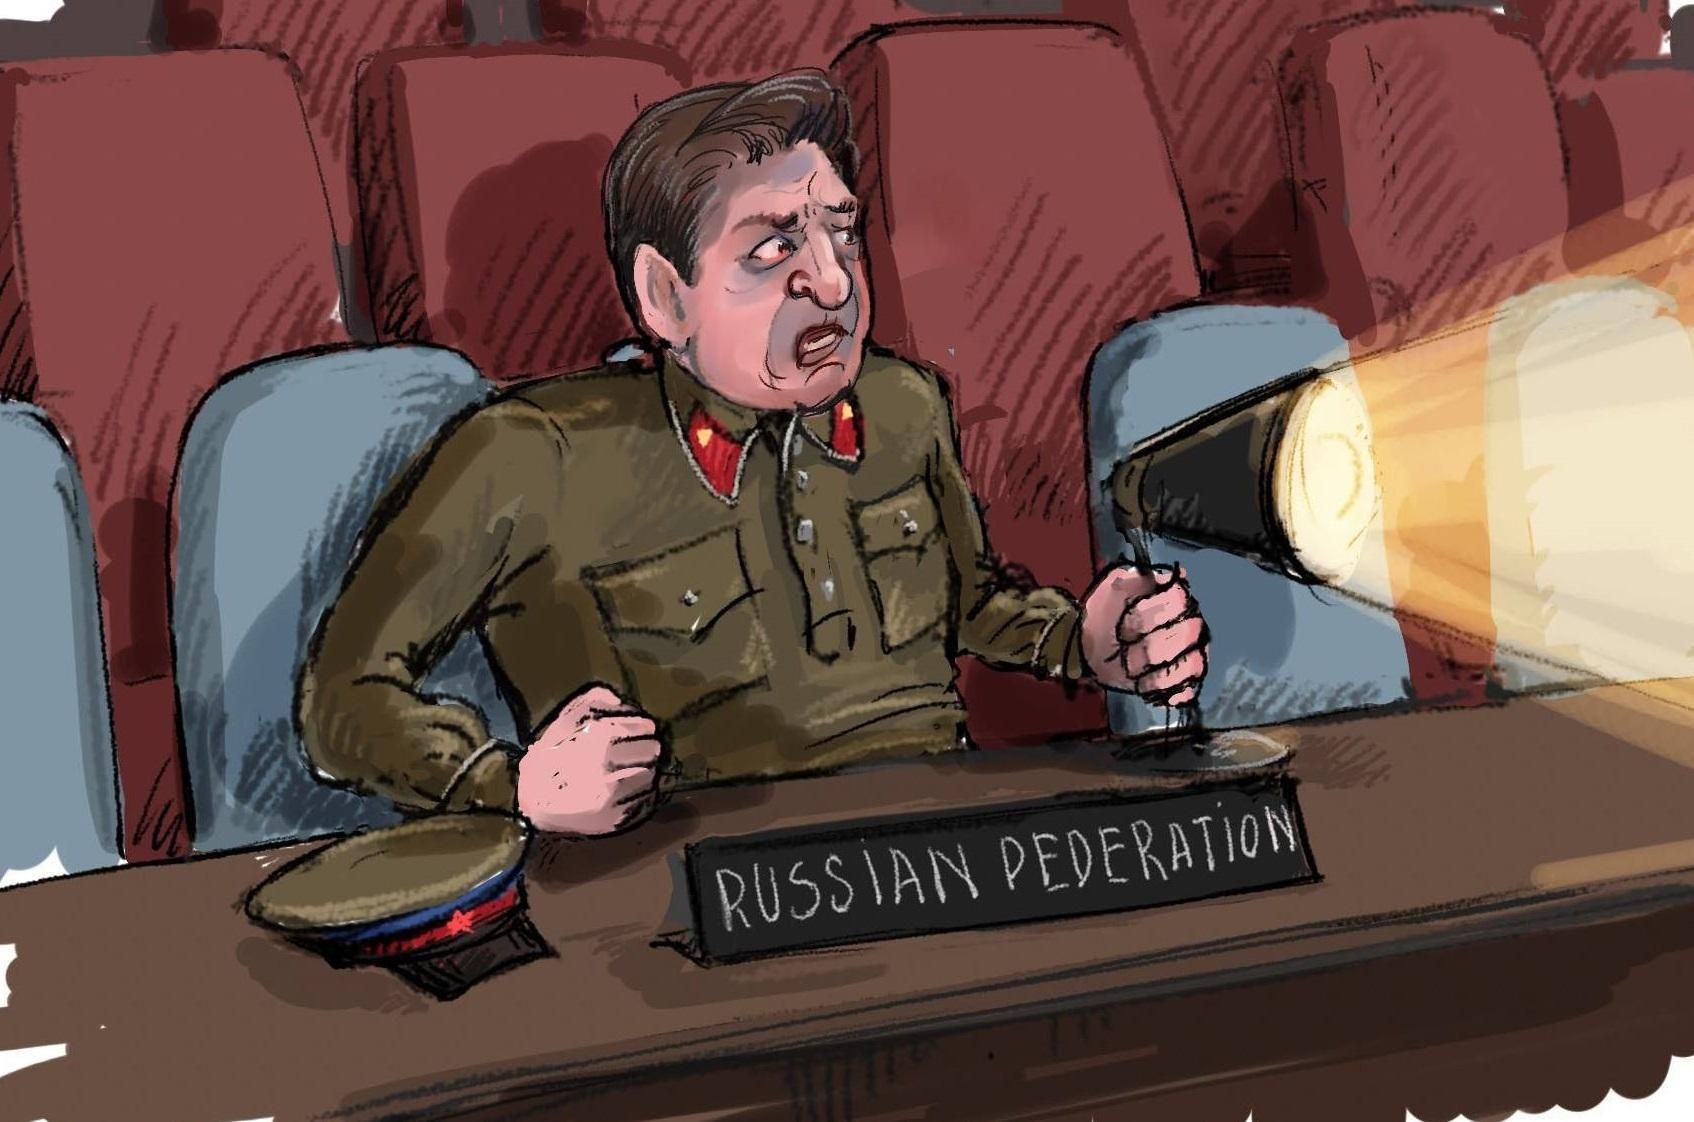 Скандальное выступление россиянина на Совбезе ООН изобразили в меткой карикатуре